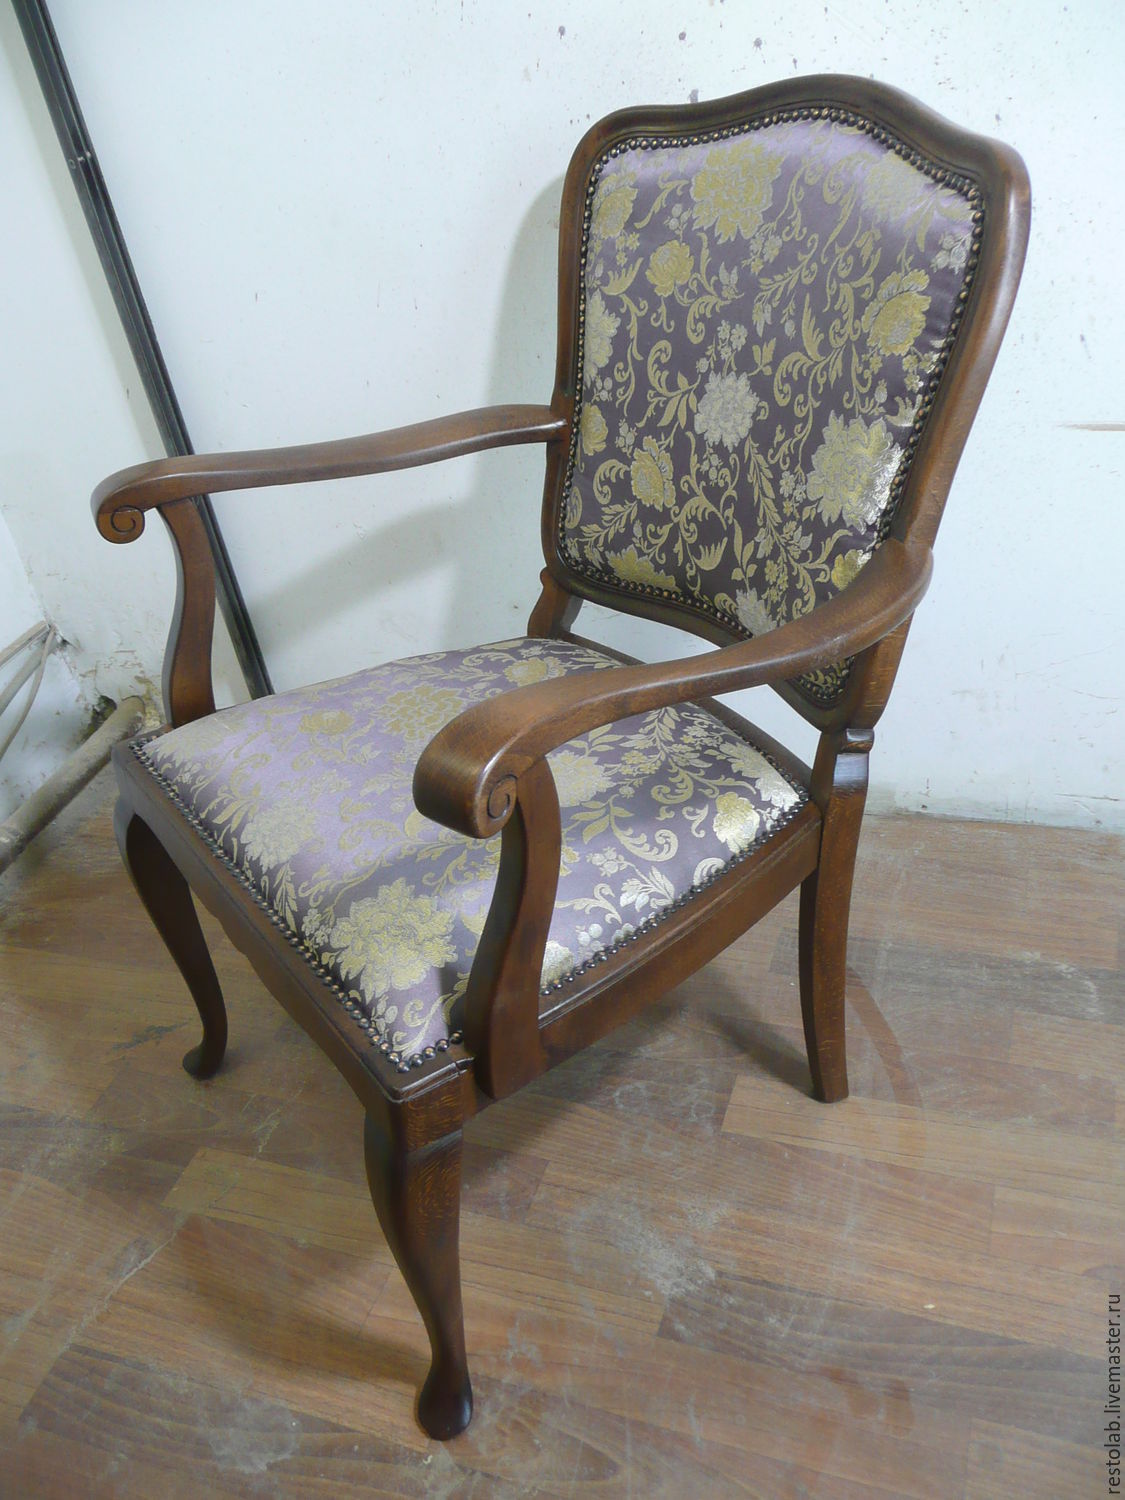 Реставрация деревянного кресла. Кресла Козелкин Винтаж. Старое кресло. Старое кресло с деревянными подлокотниками. Кресло "Стар".